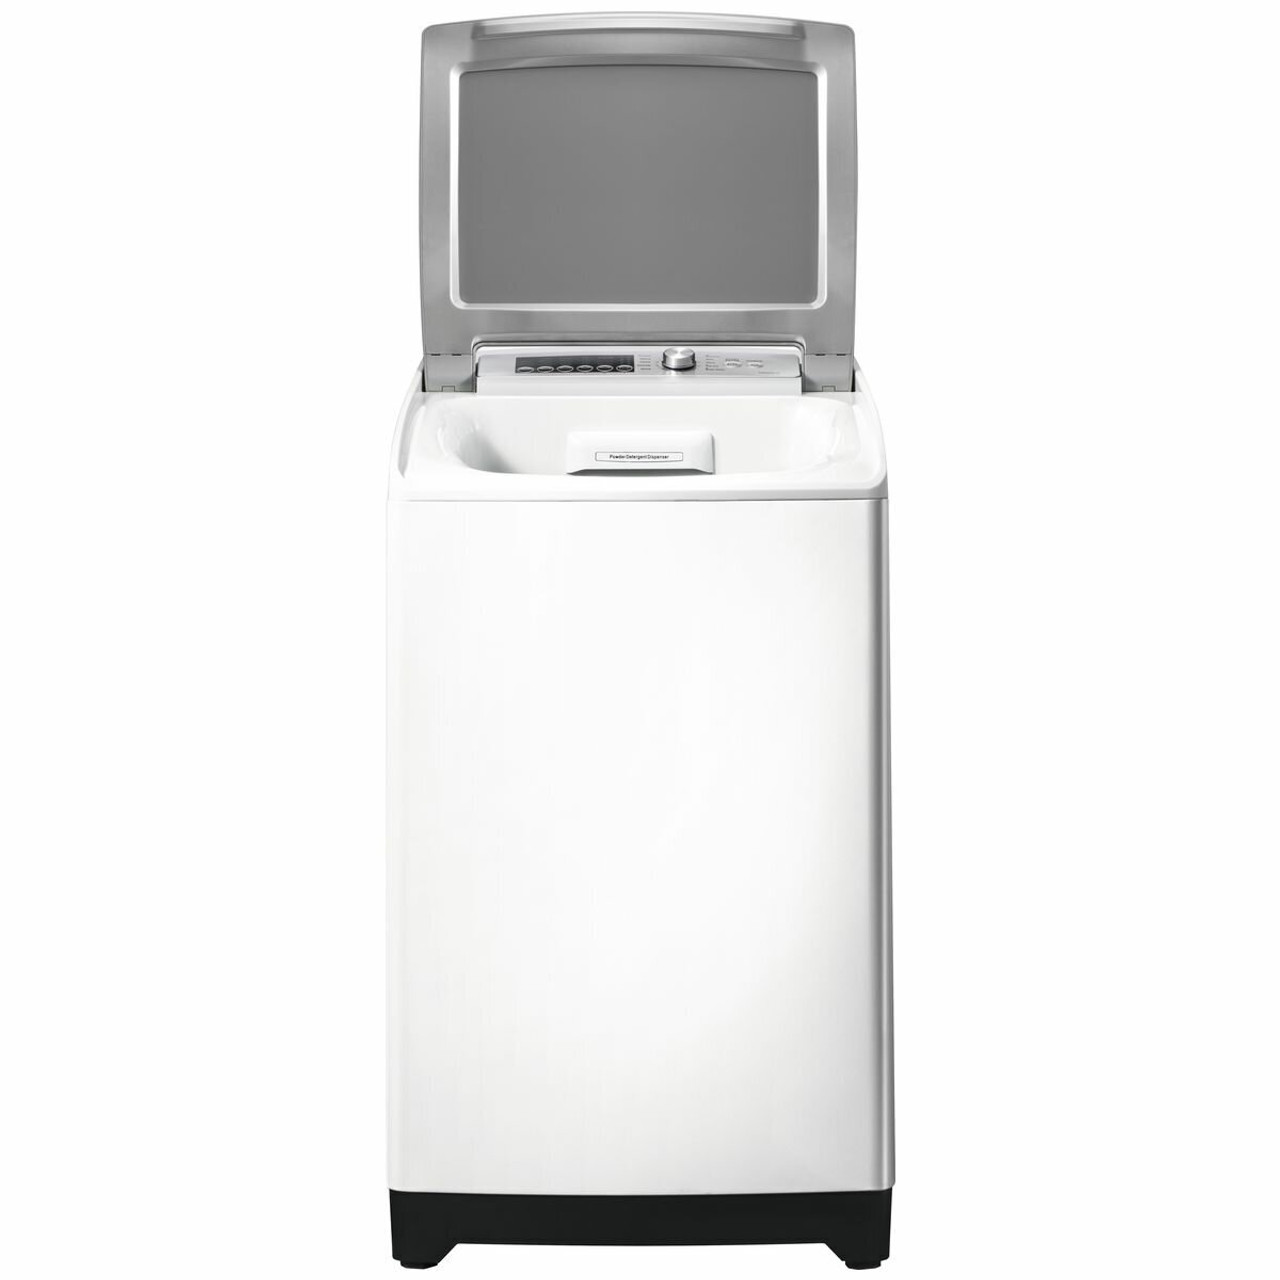 HWMSP70 – 7kg Top Load Washing Machine - White